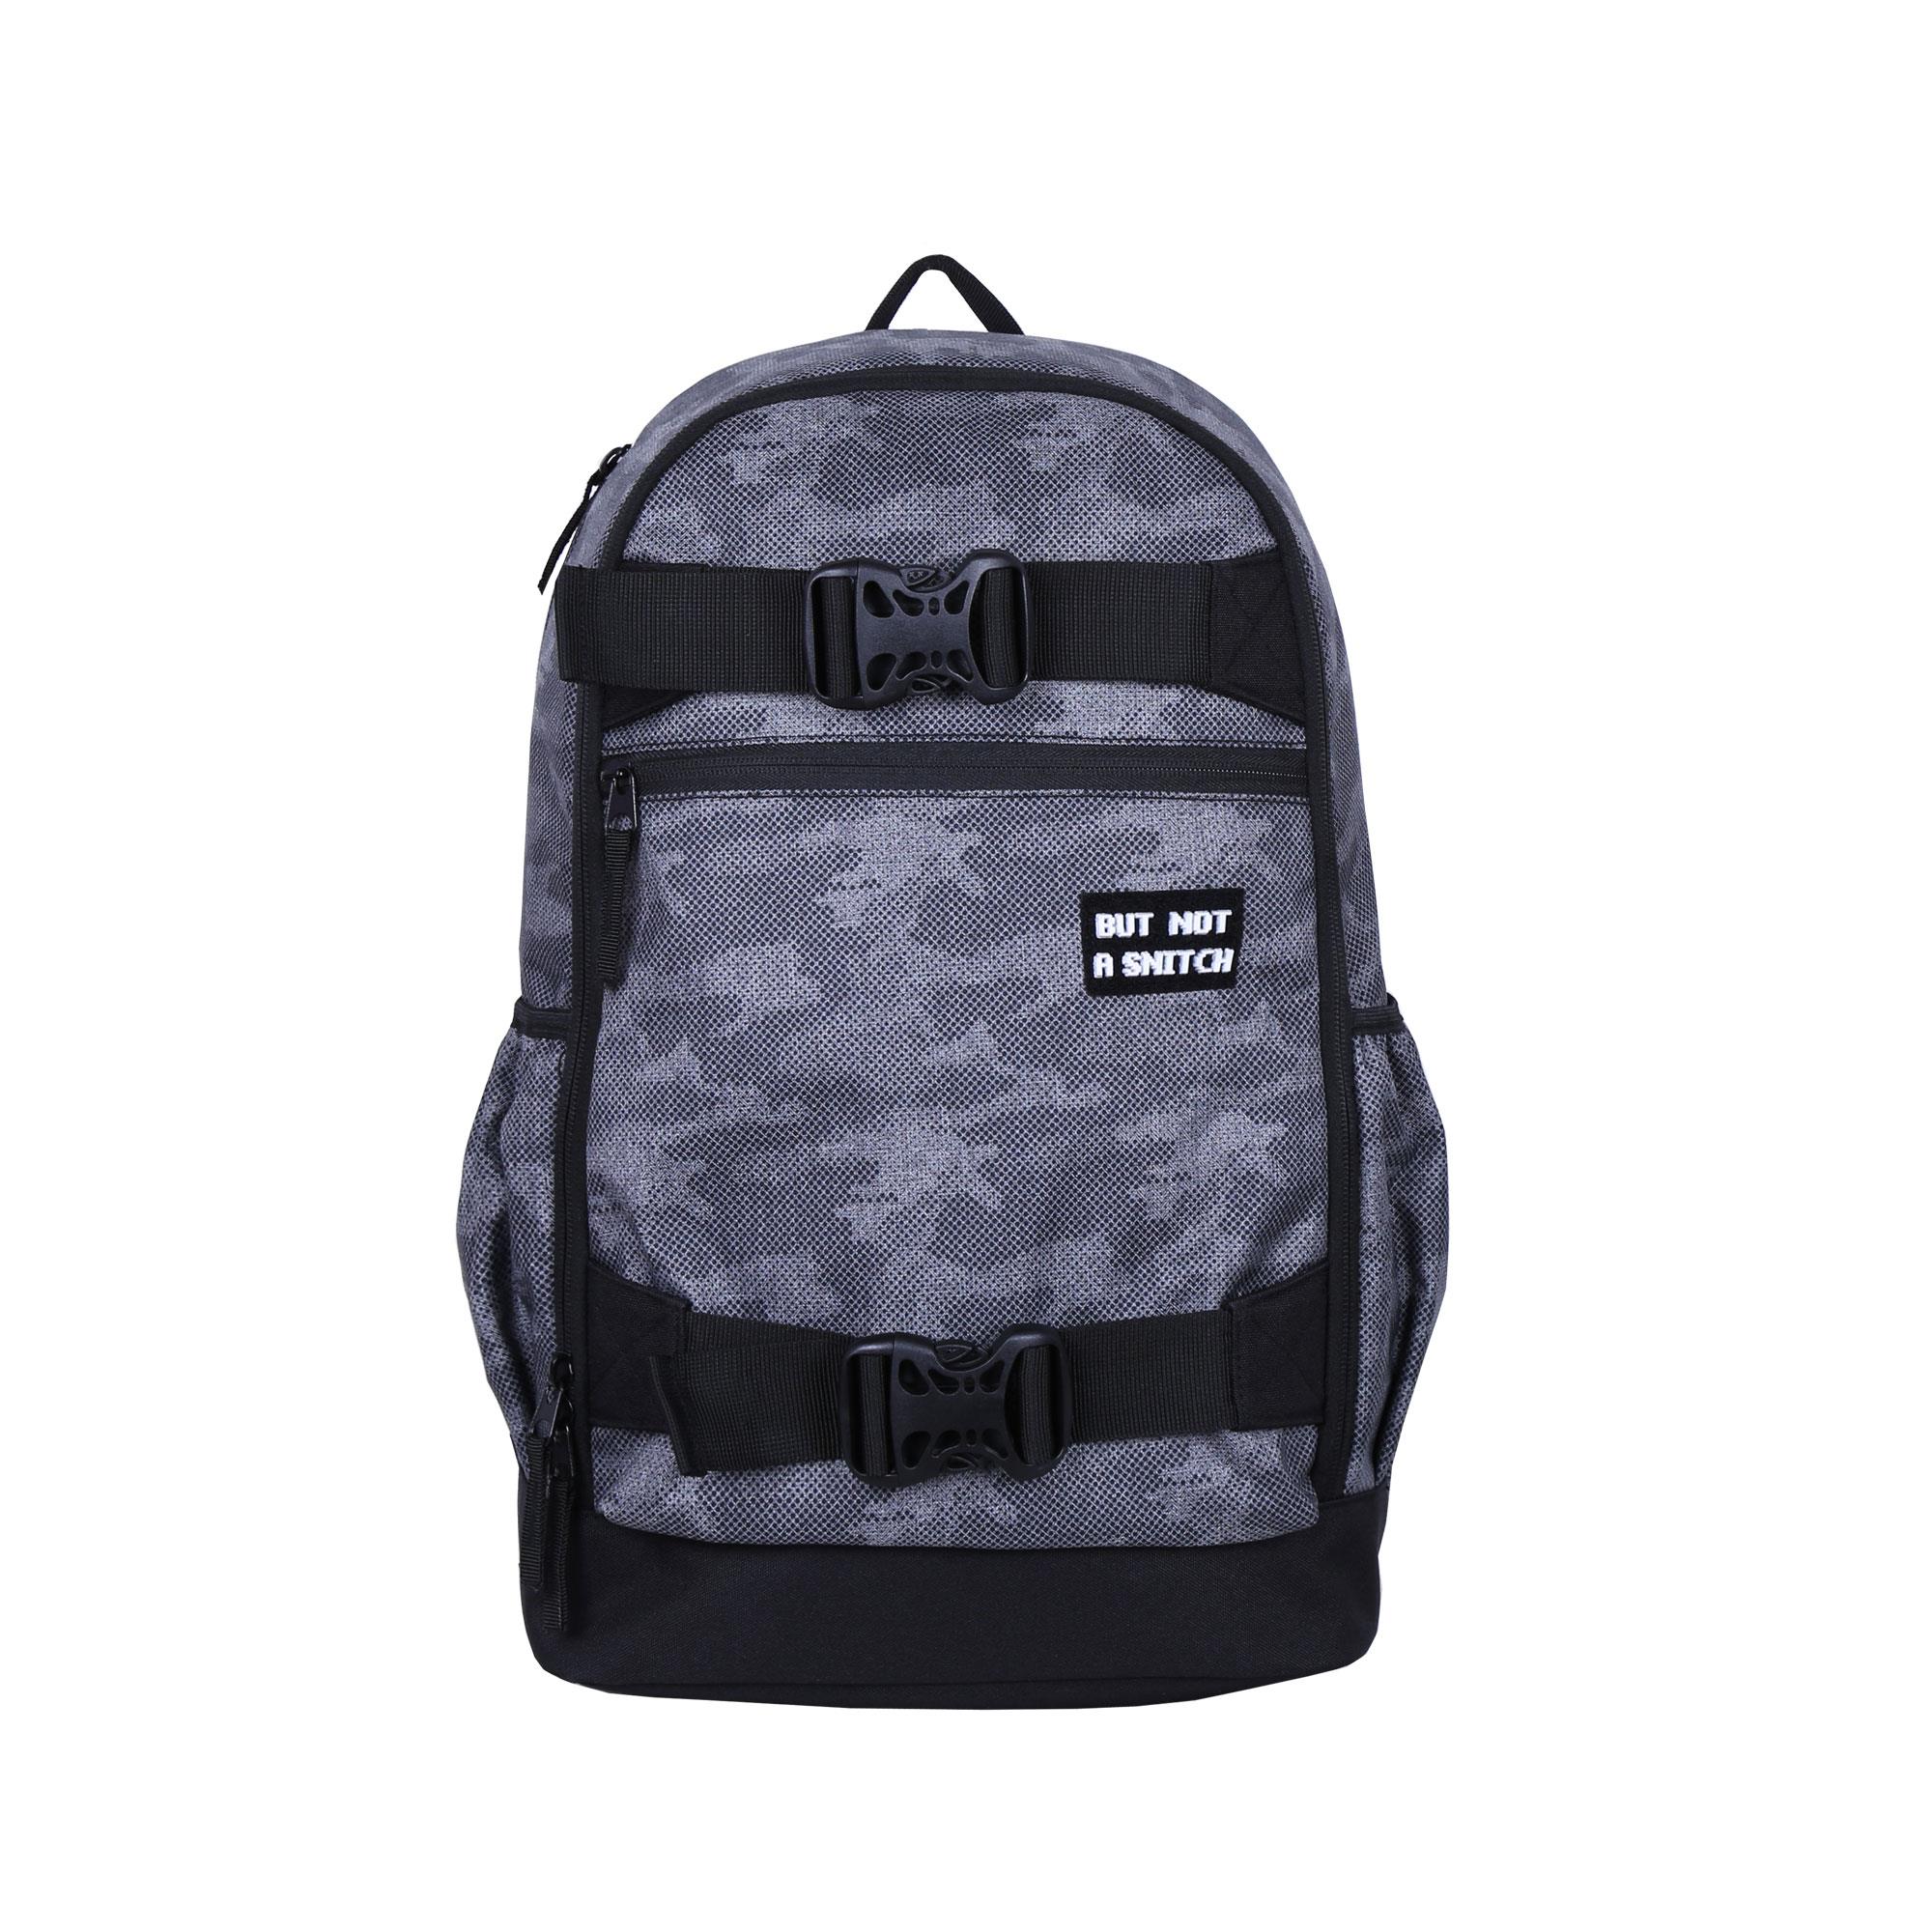 OEM Customized Hot Selling Backpack -
 B1053-003 Melange – Herbert